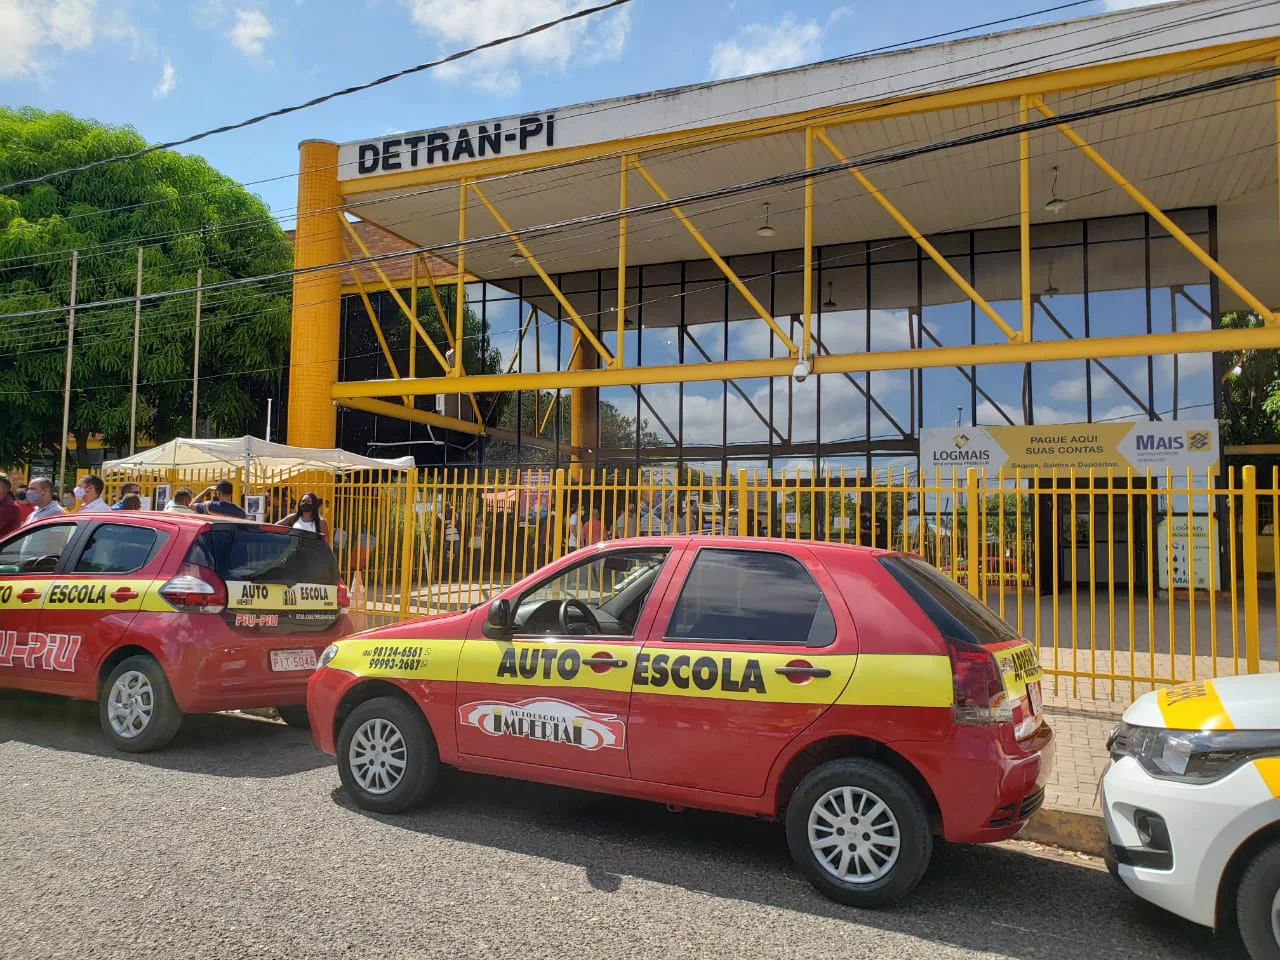 Donos de autoescolas realizam manifestação contra o Detran no Piauí - GP1